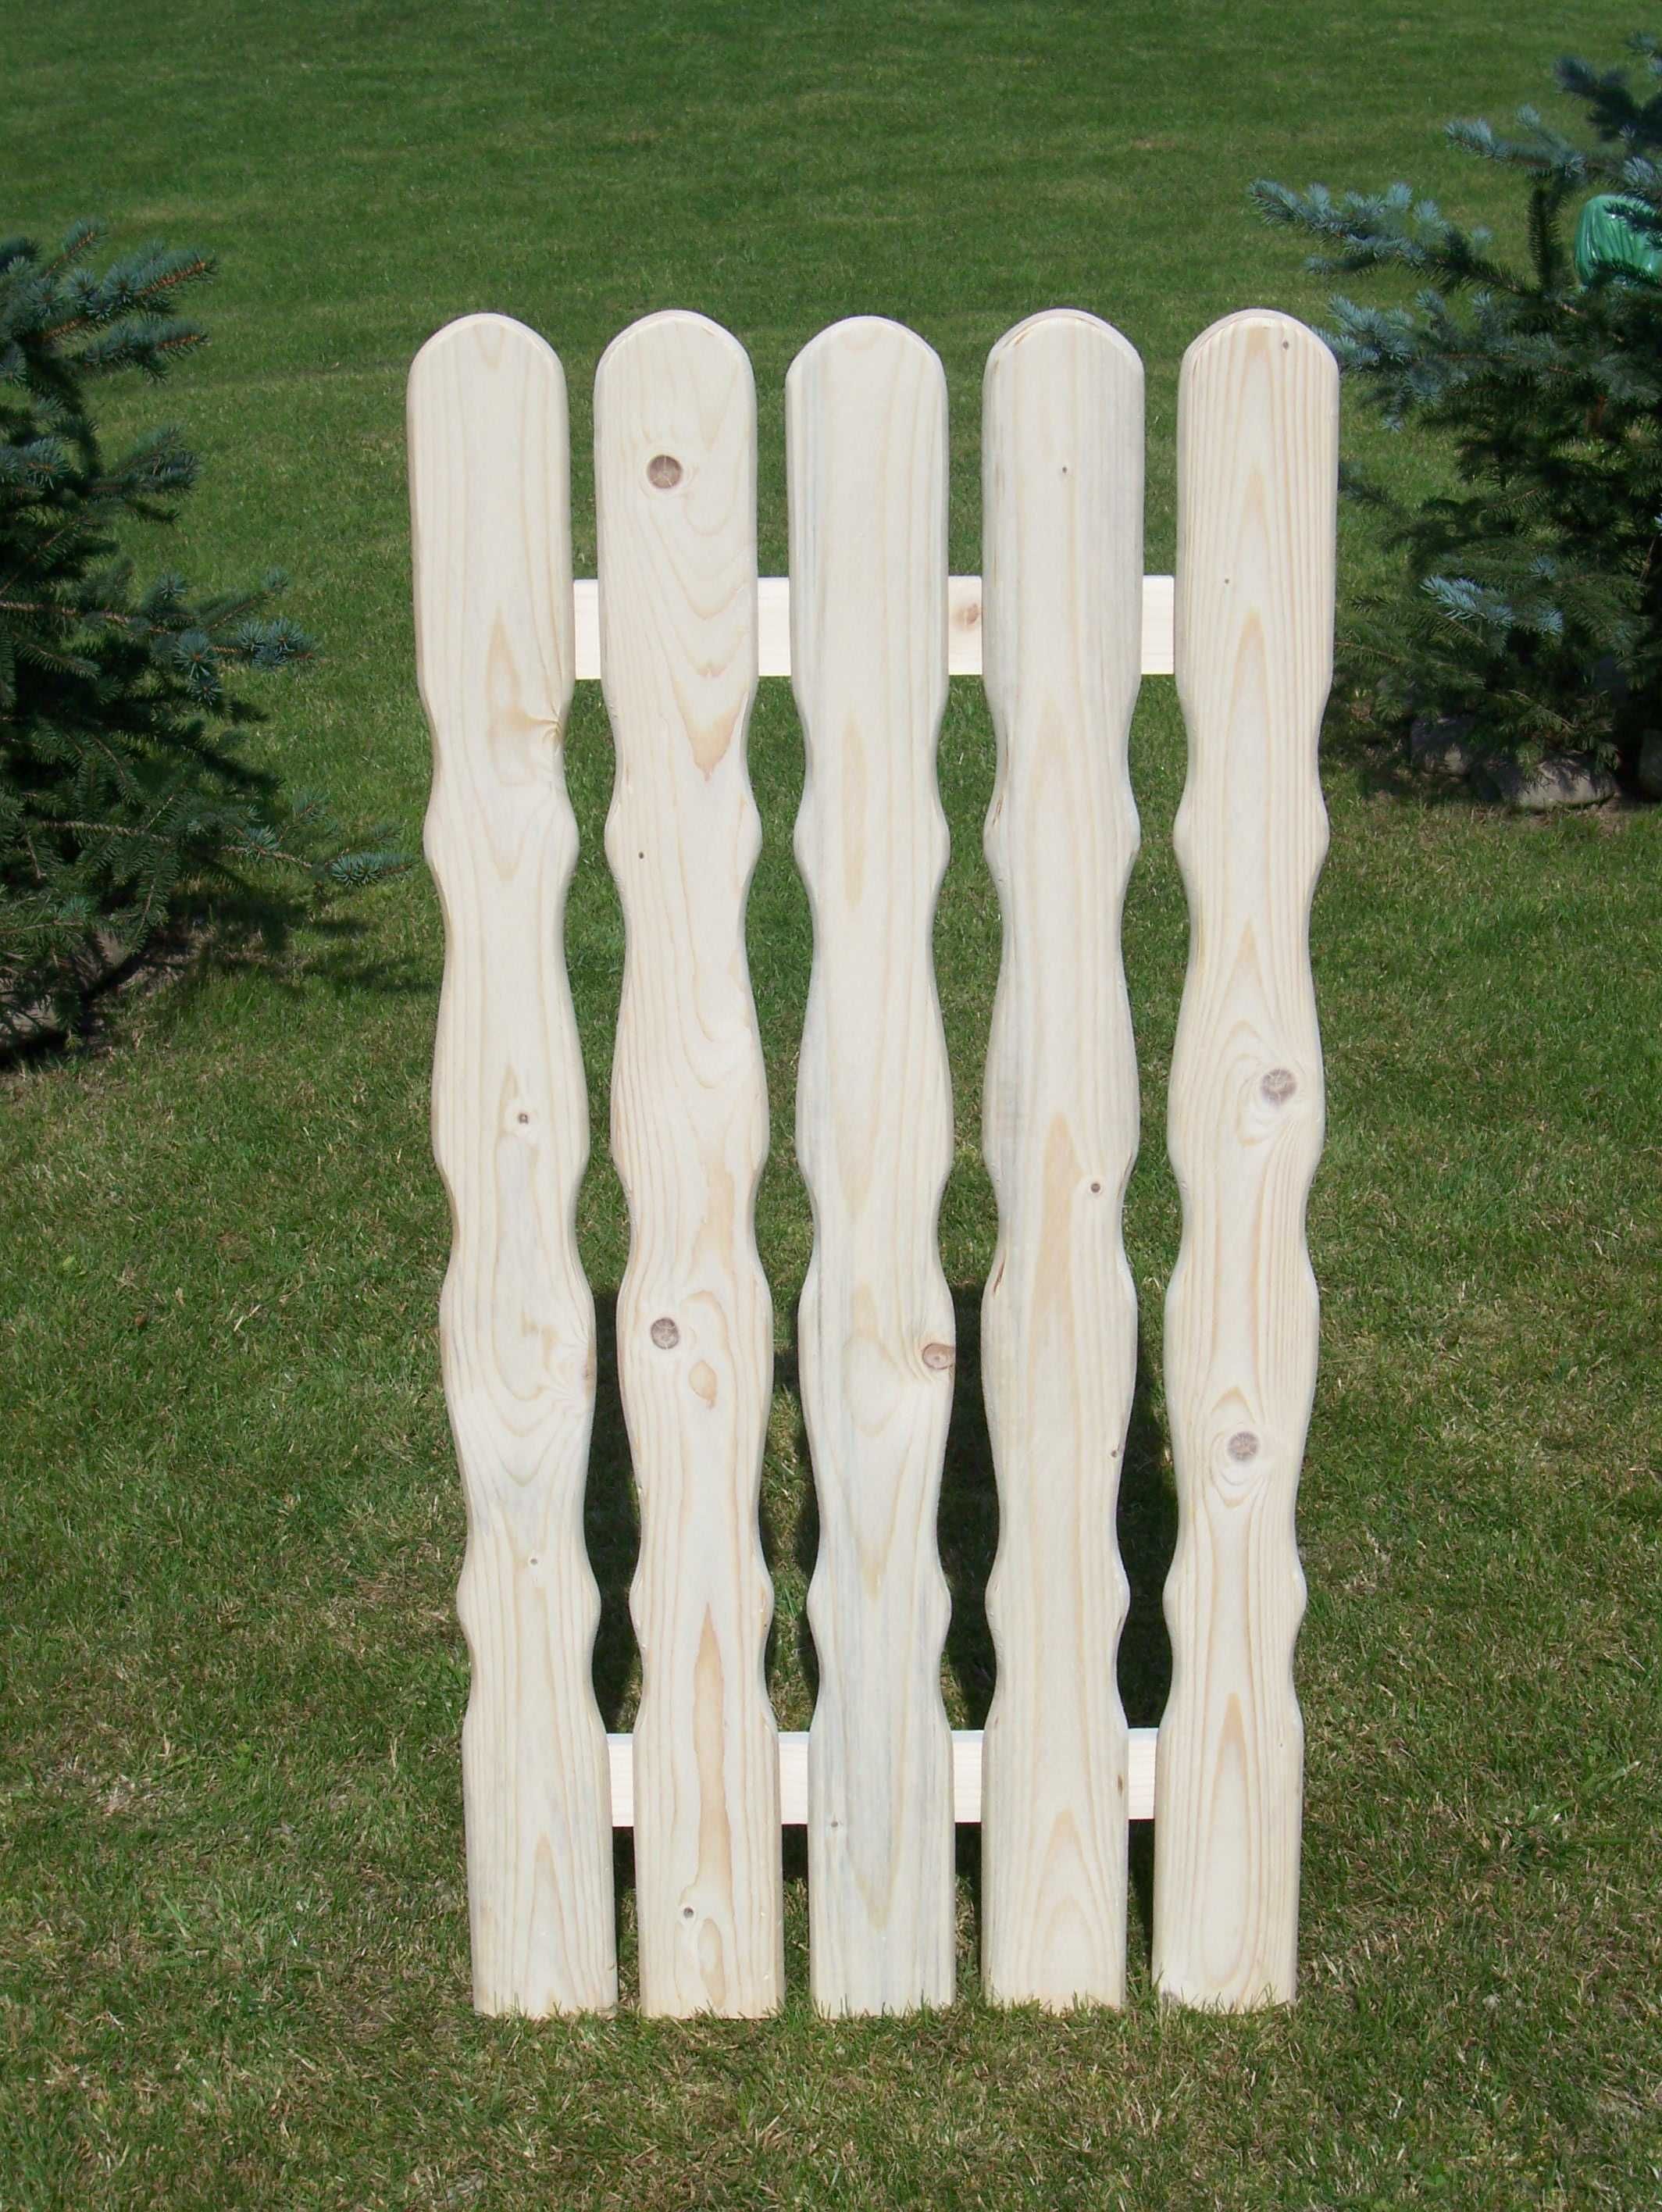 Sztachety drewniane 100 cm. wysyłka odbiór / inne też od 50 do 200 cm.